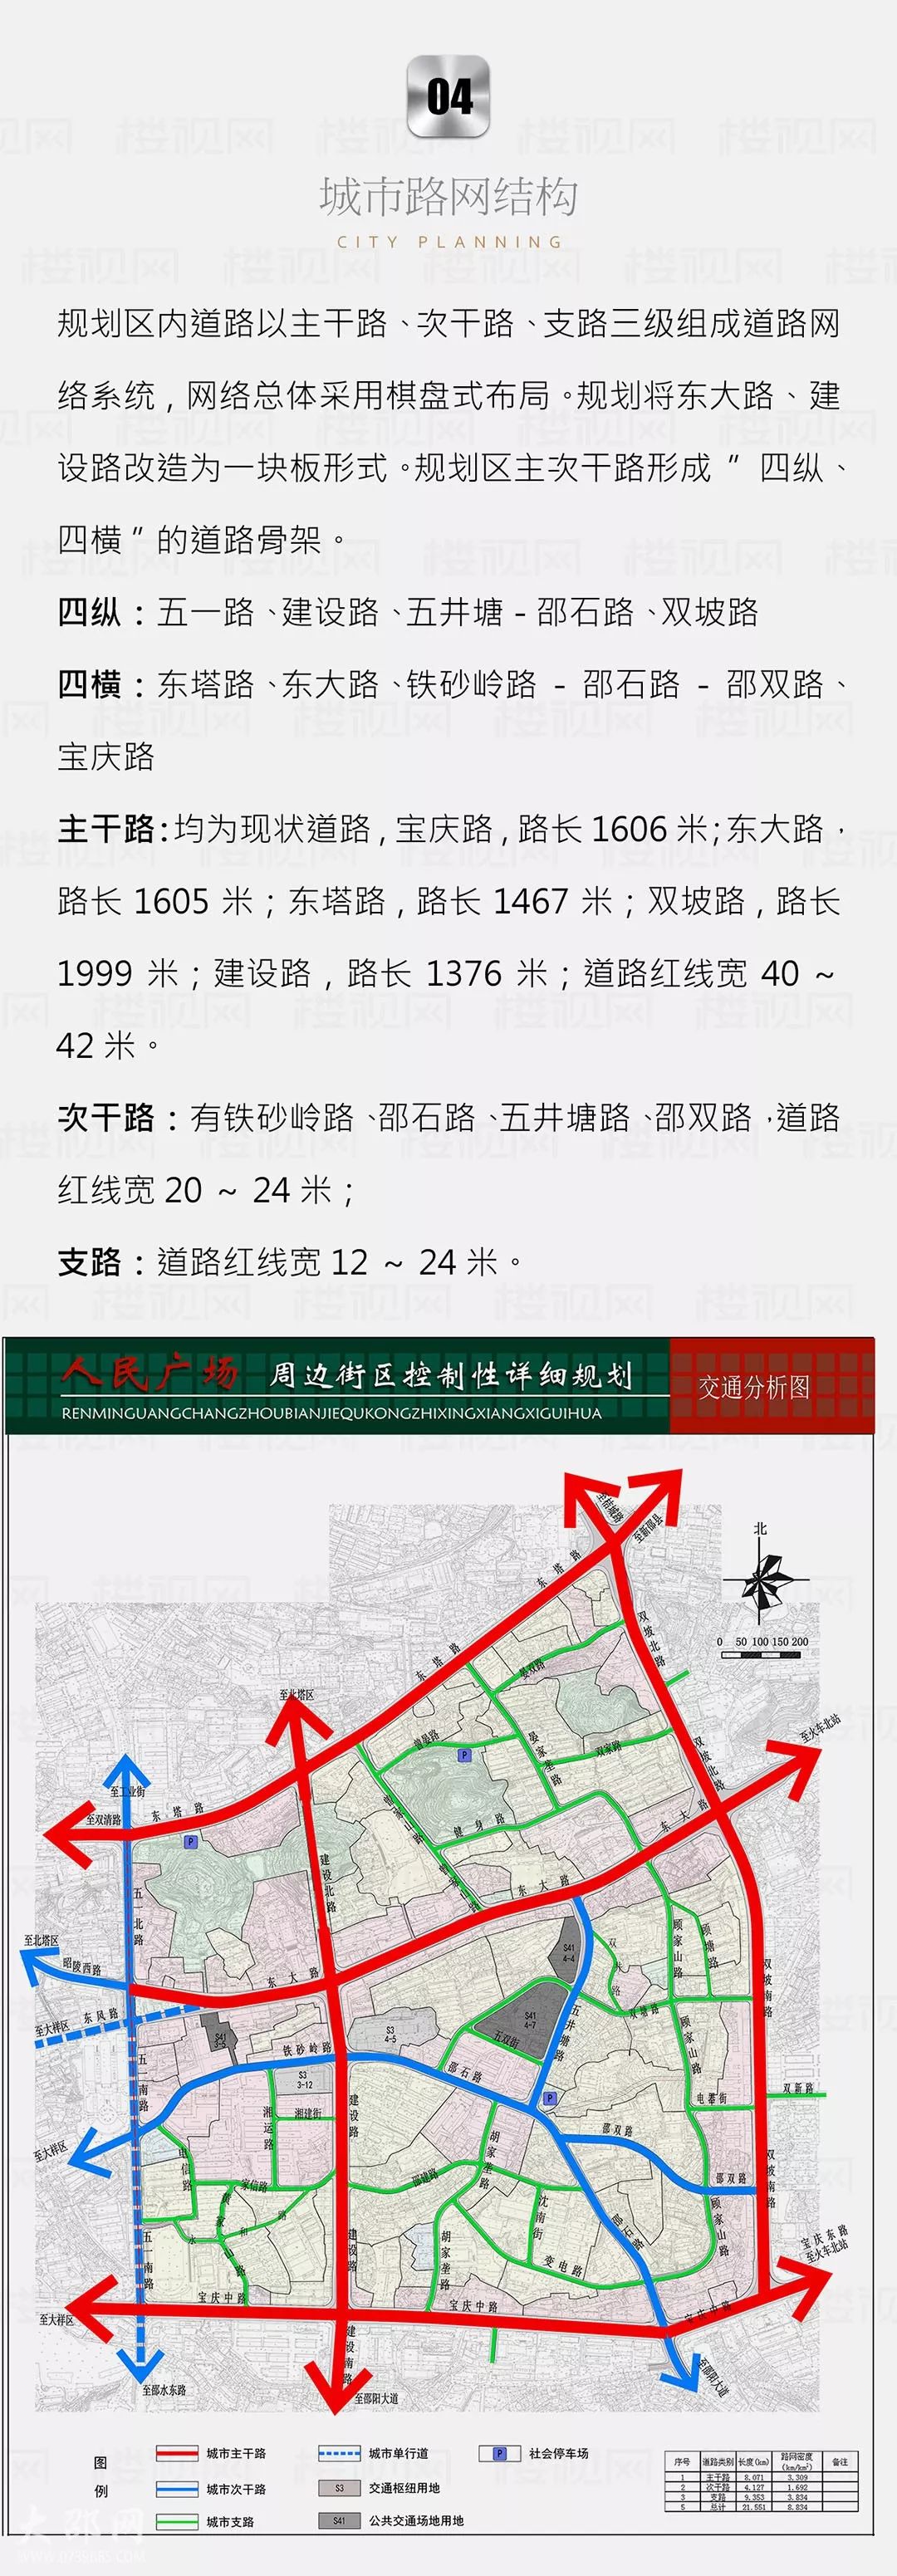 重磅:邵阳市区规划又有新动作,这个核心区域要大变了!